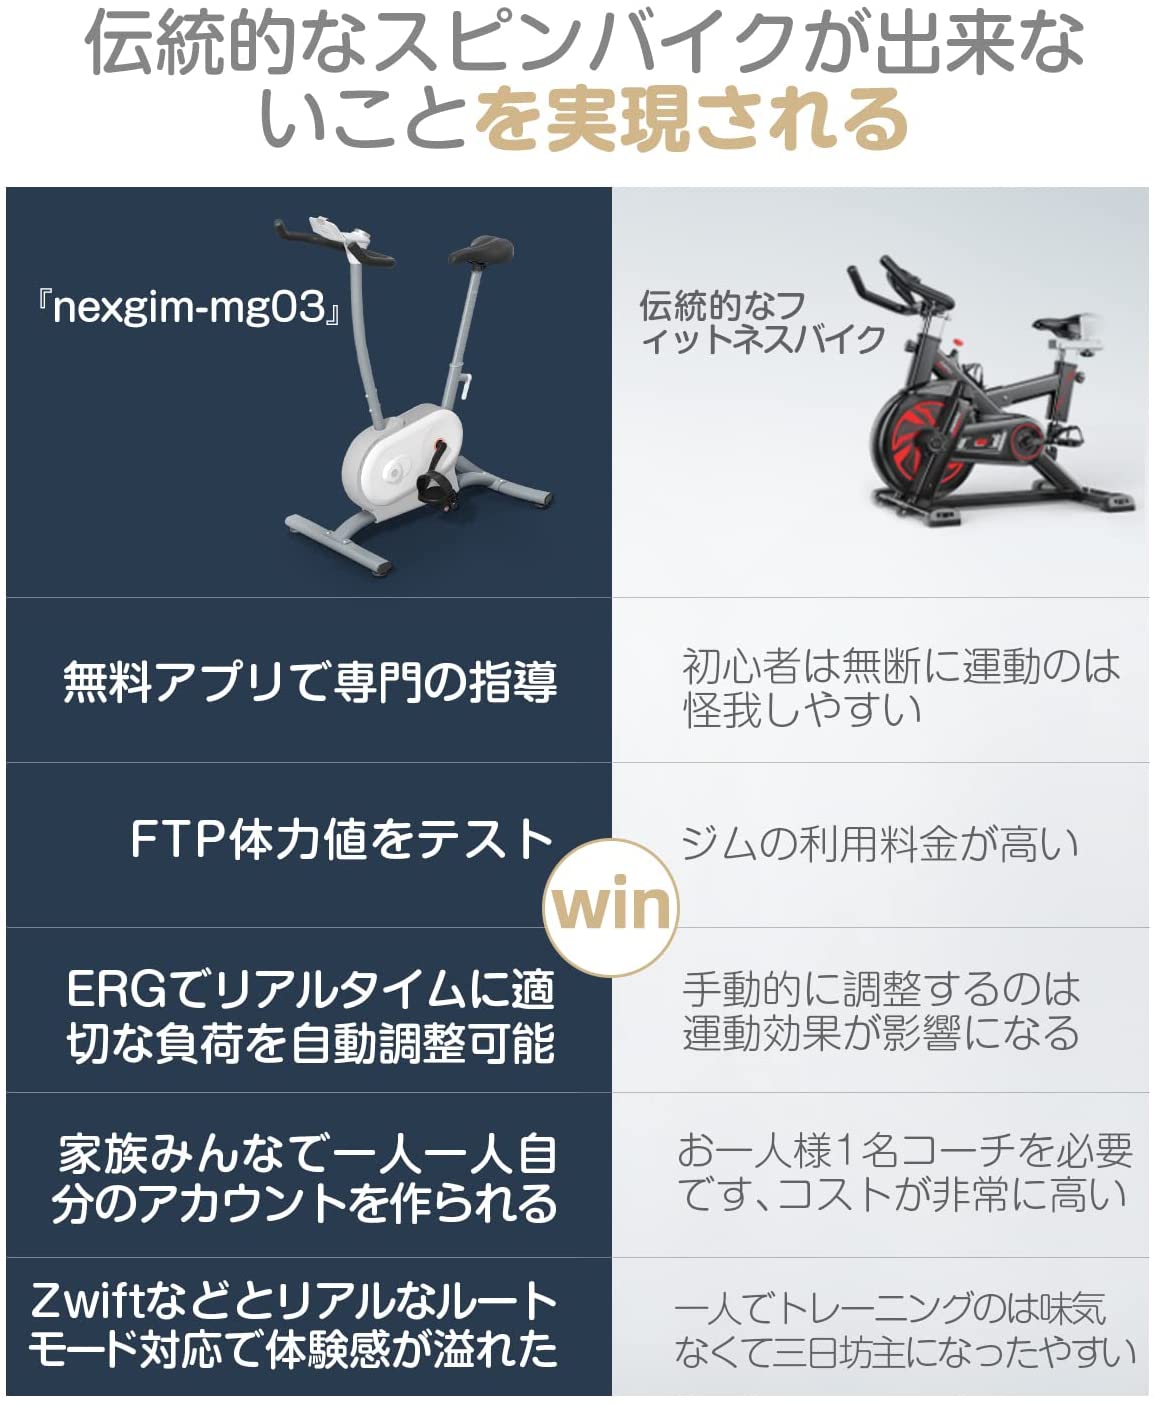 フィットネスバイク AI nexgim mg03L -zepan -zepan